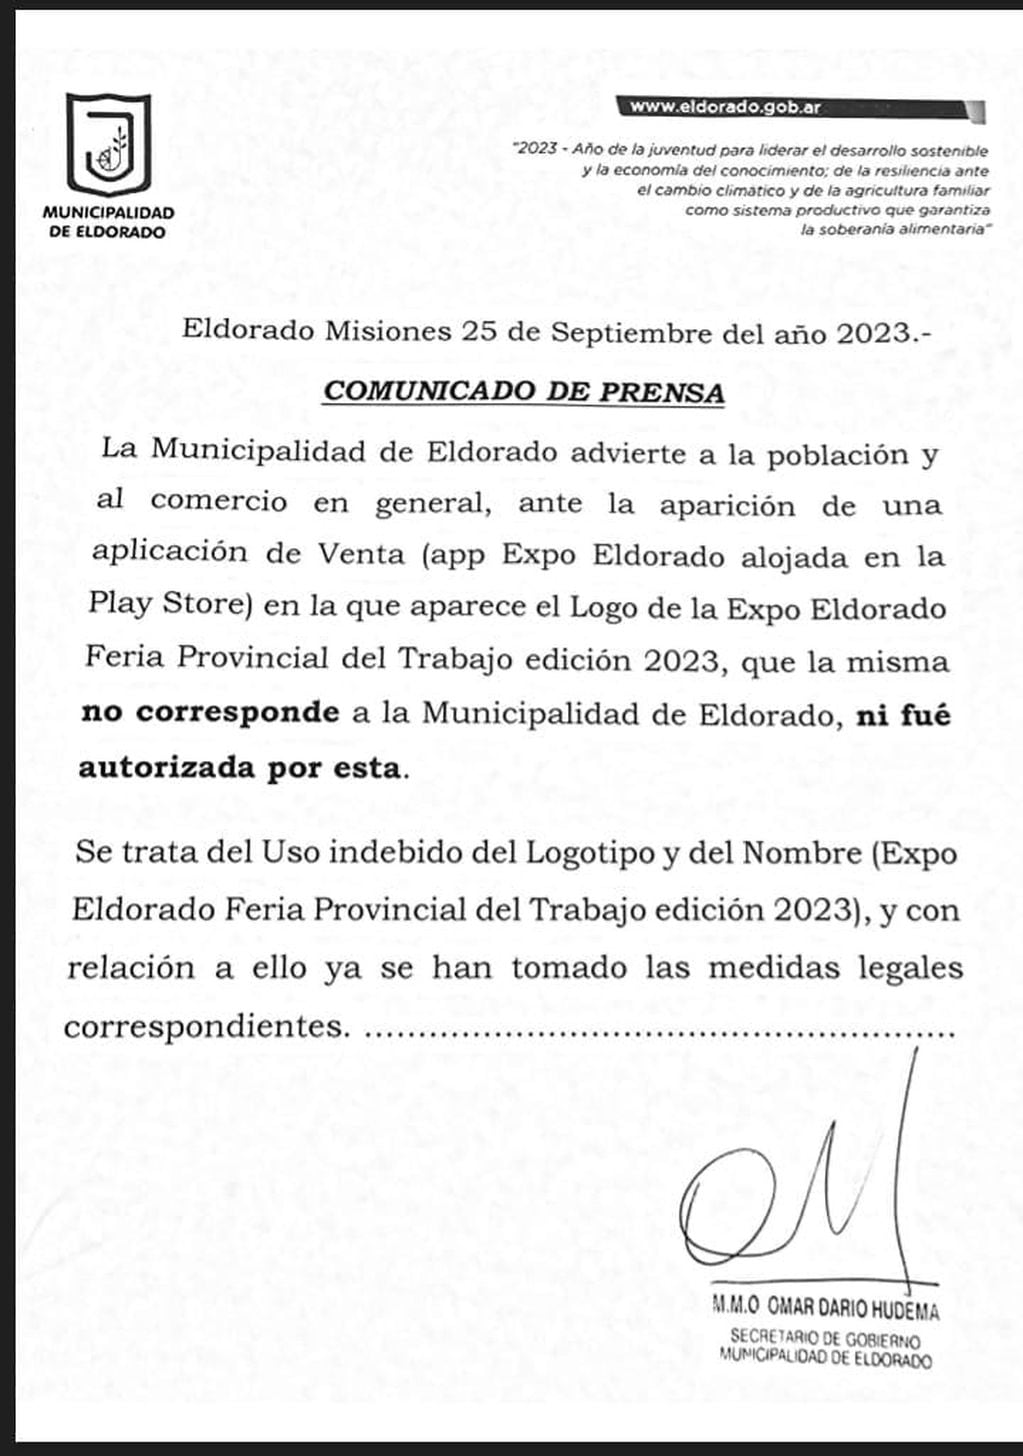 Advierten sobre una aplicación falsa de la Expo Eldorado.